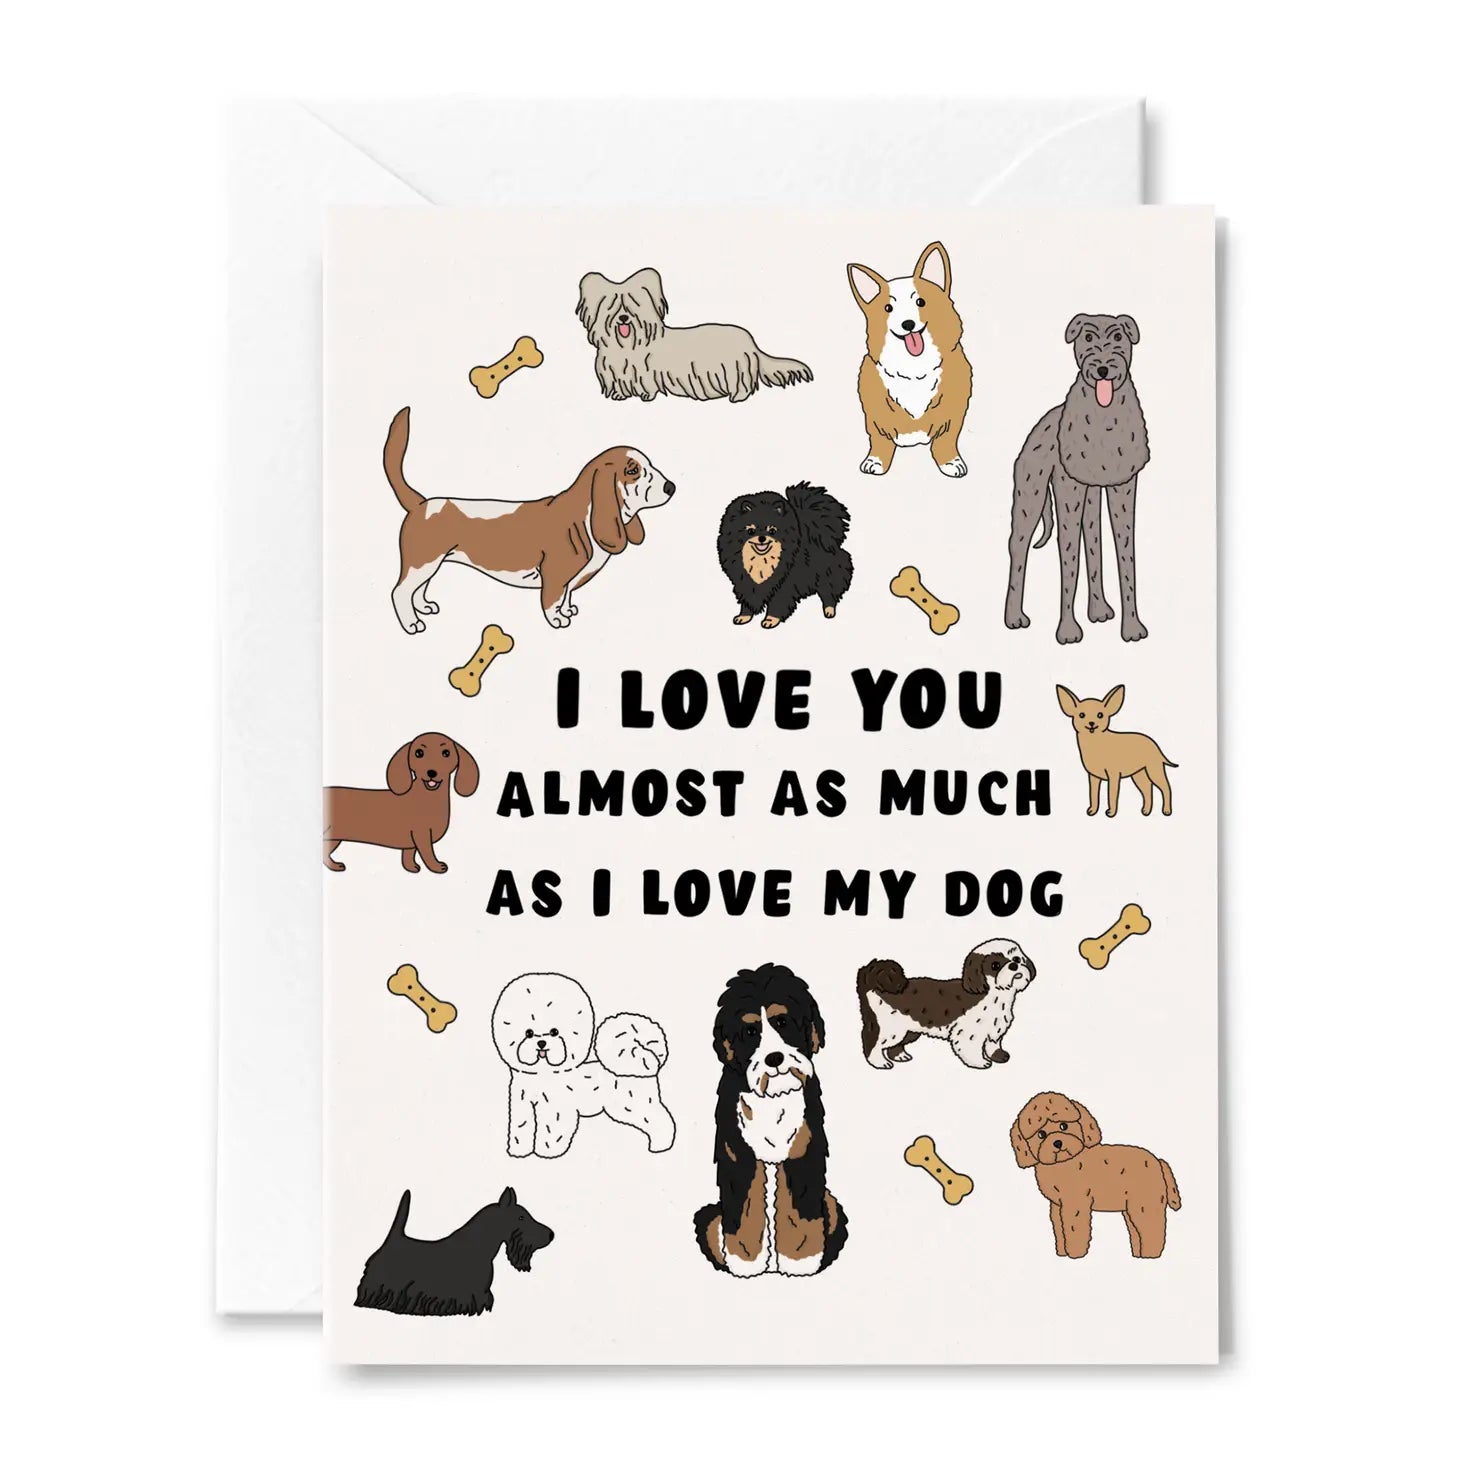 LOVE MY DOG CARD